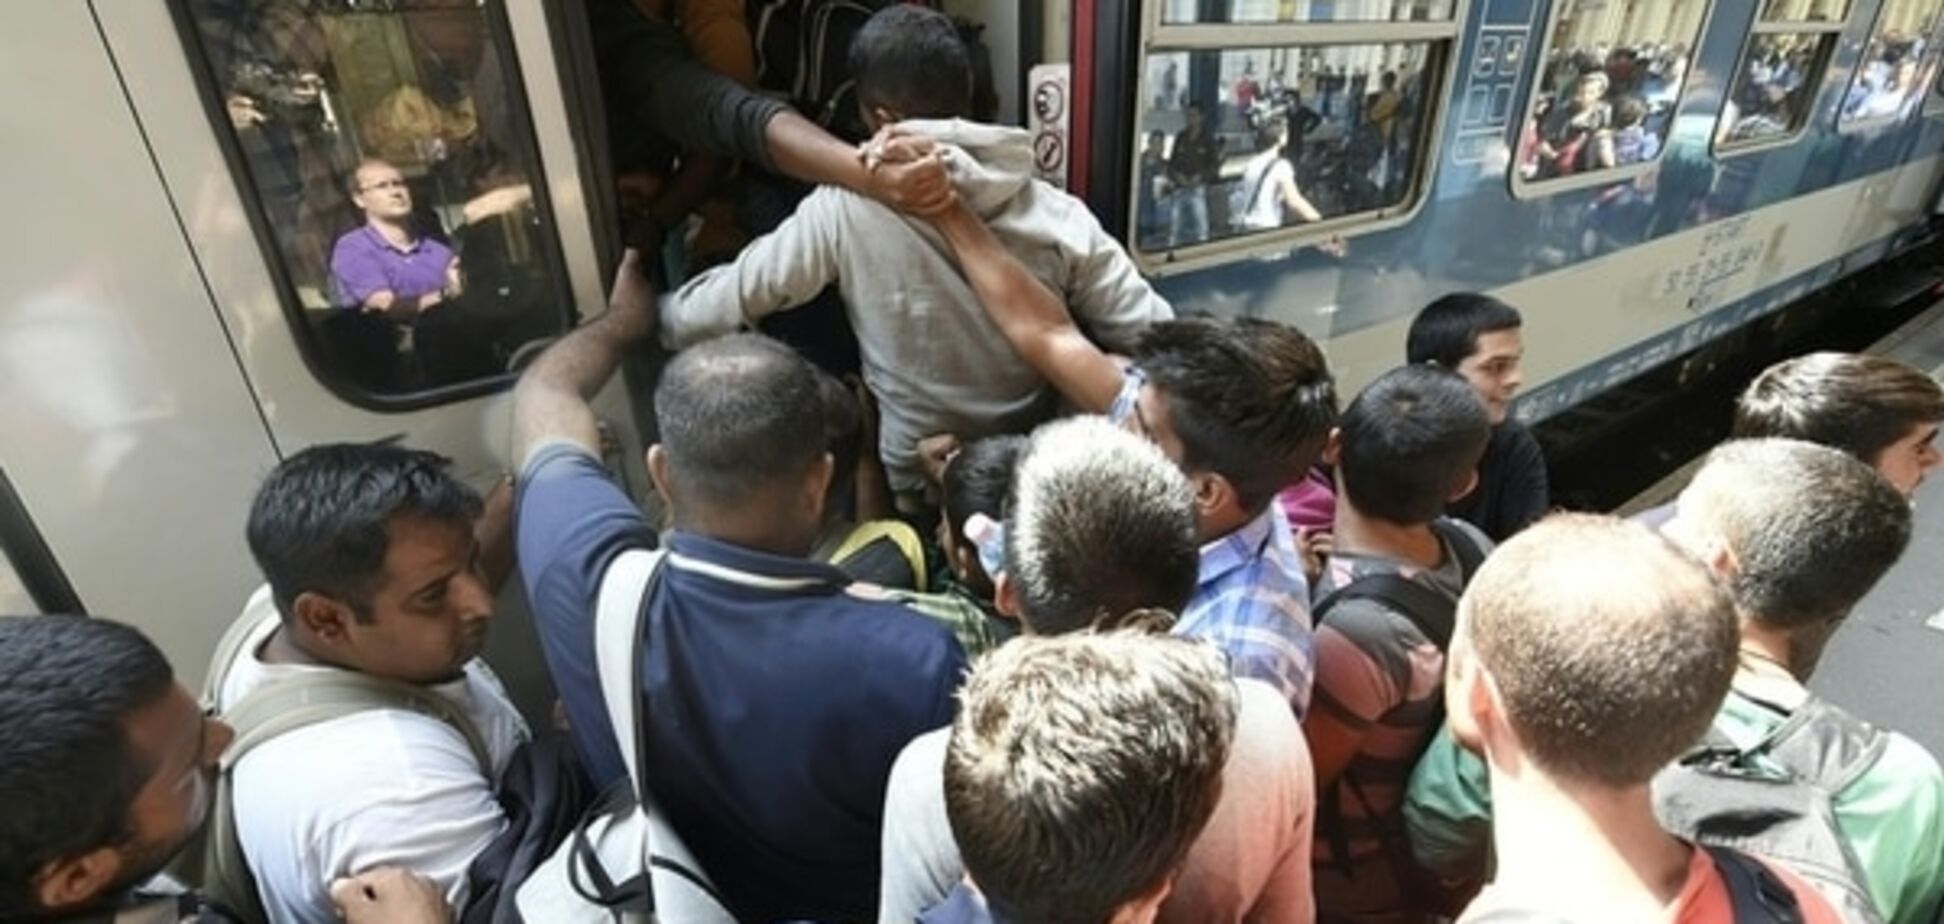 Кризис мигрантов в ЕС: фоторепортаж из бунтующих городов